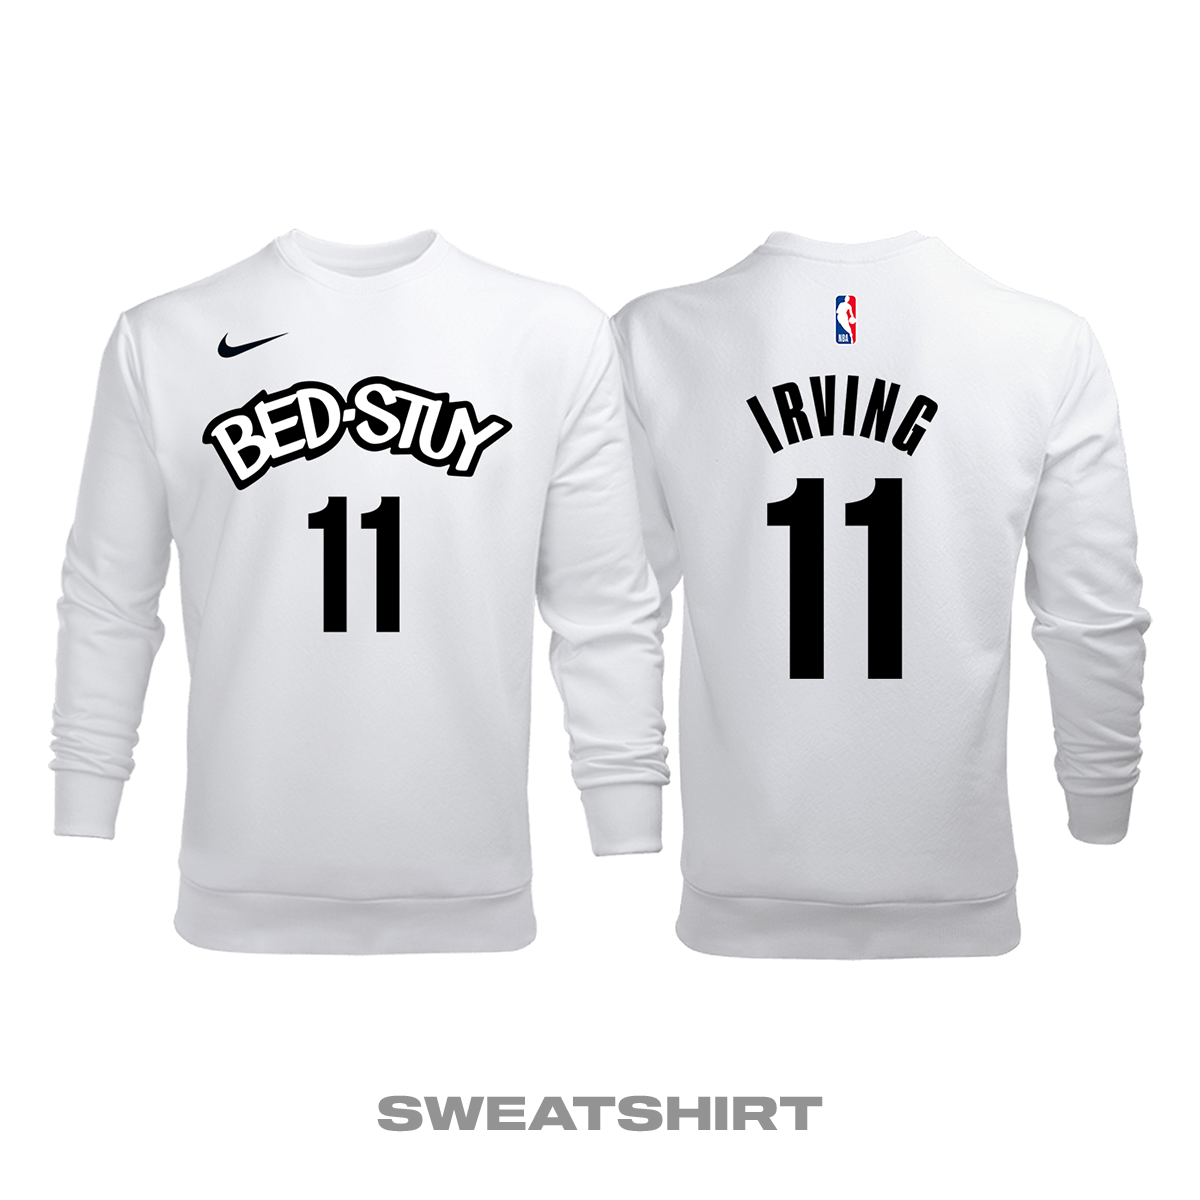 Brooklyn Nets: City Edition 2019/2020 Sweatshirt